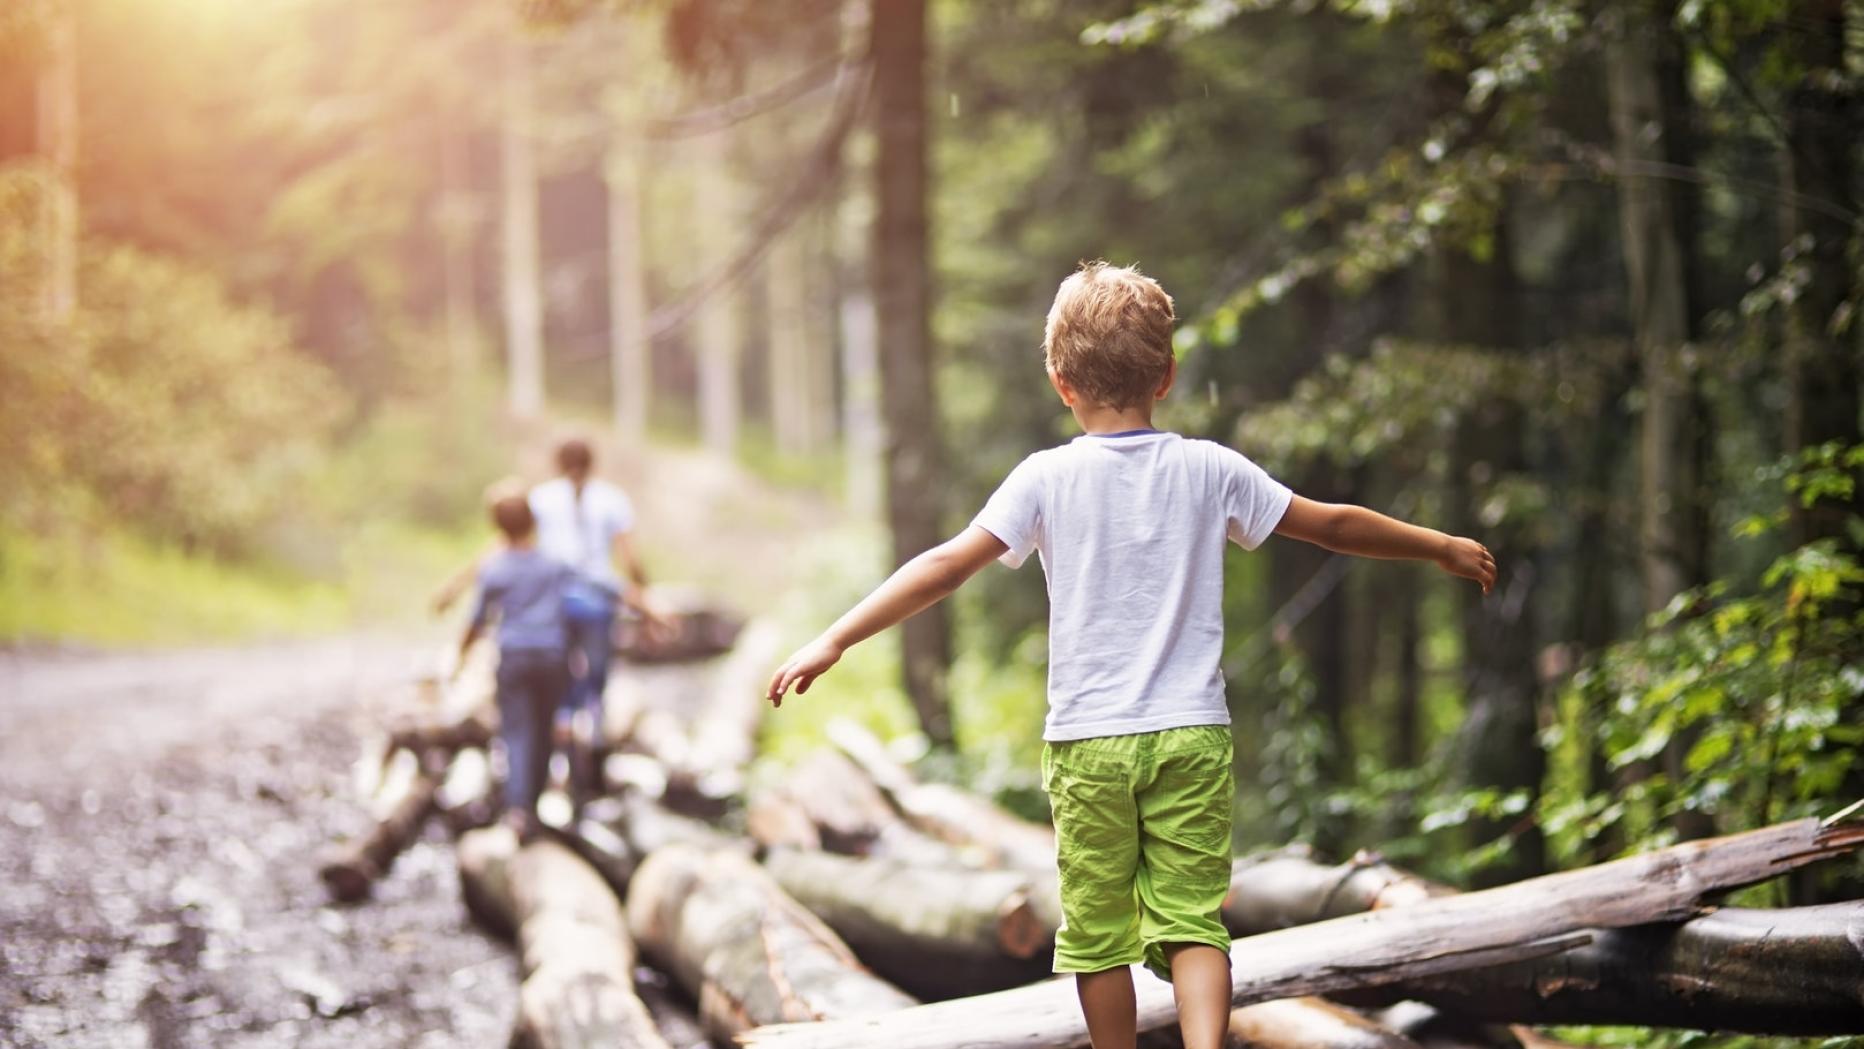 Natural boys. Играющие дети со спины. Мальчик на даче со спины. Играющие дети возле леса. «Безопасность детей в природе фото.